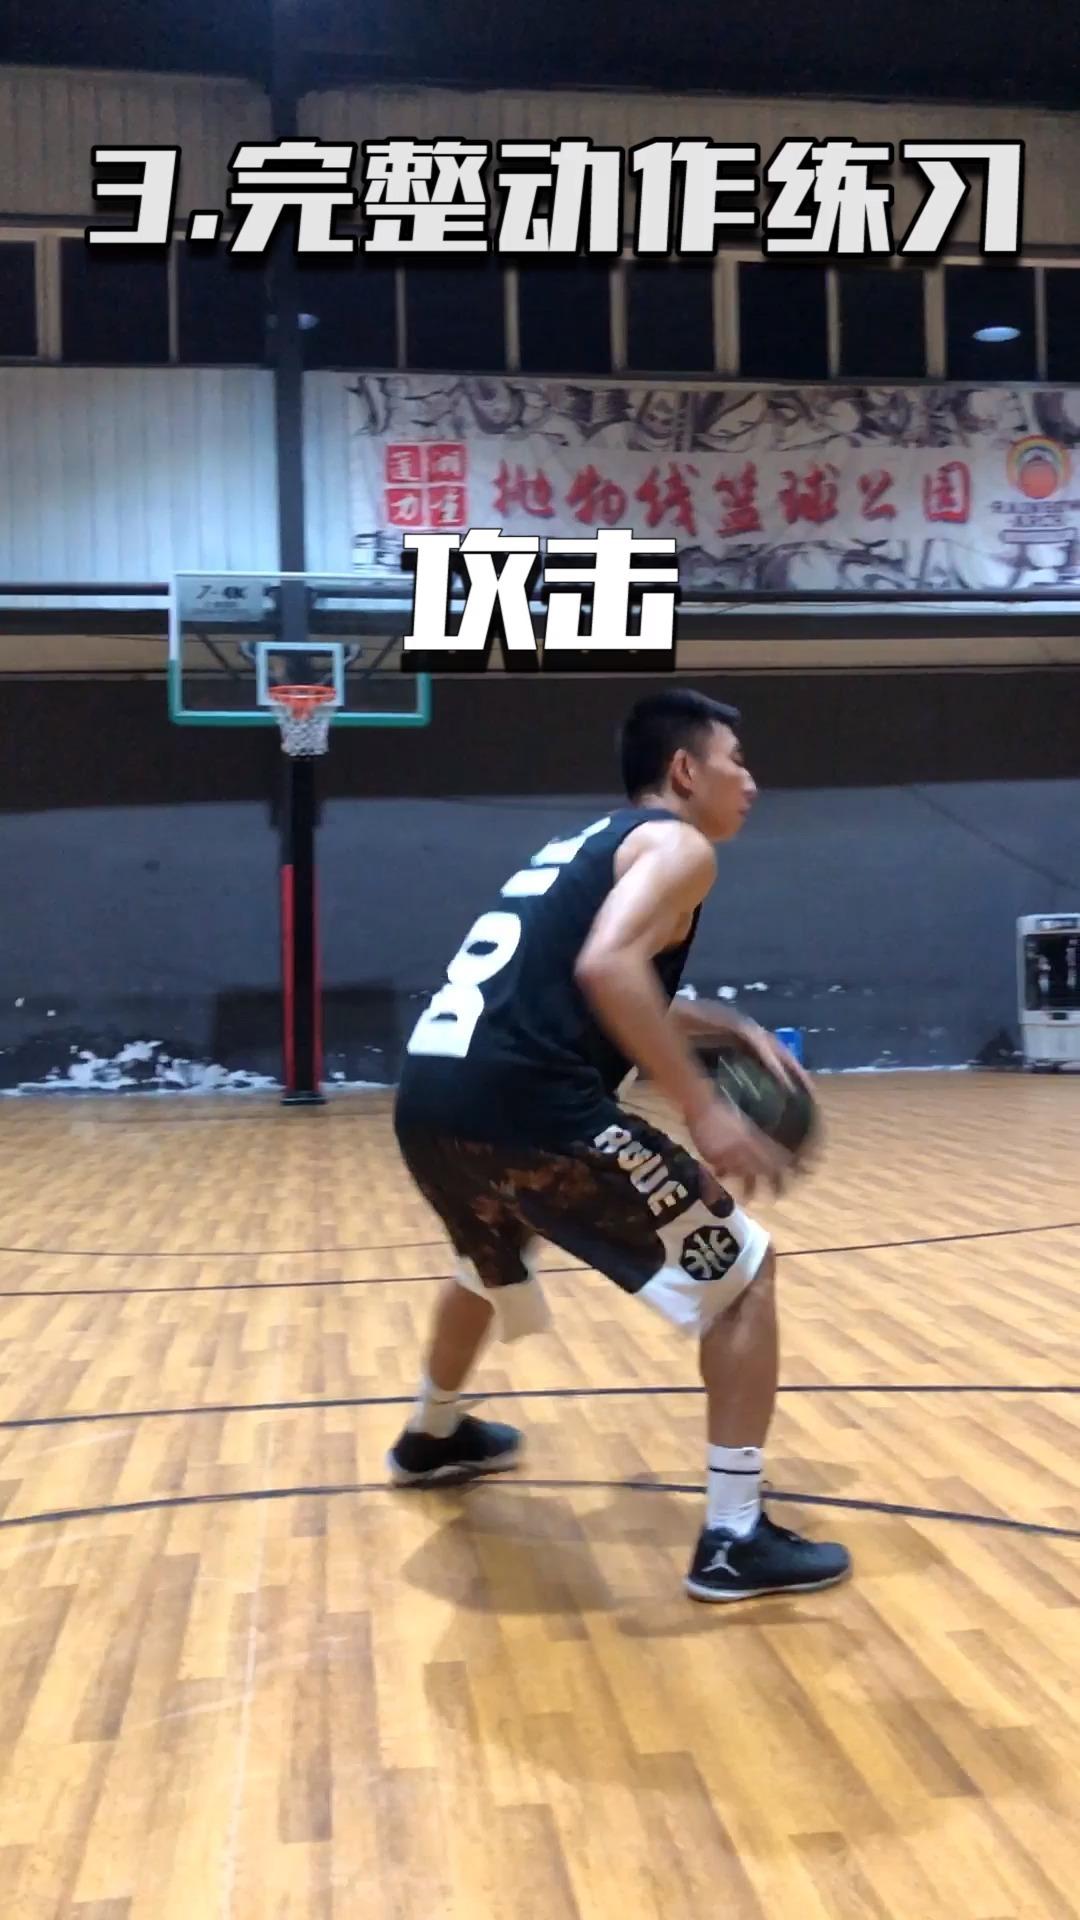 篮球双手胸前传球技术动作方法 - 知乎